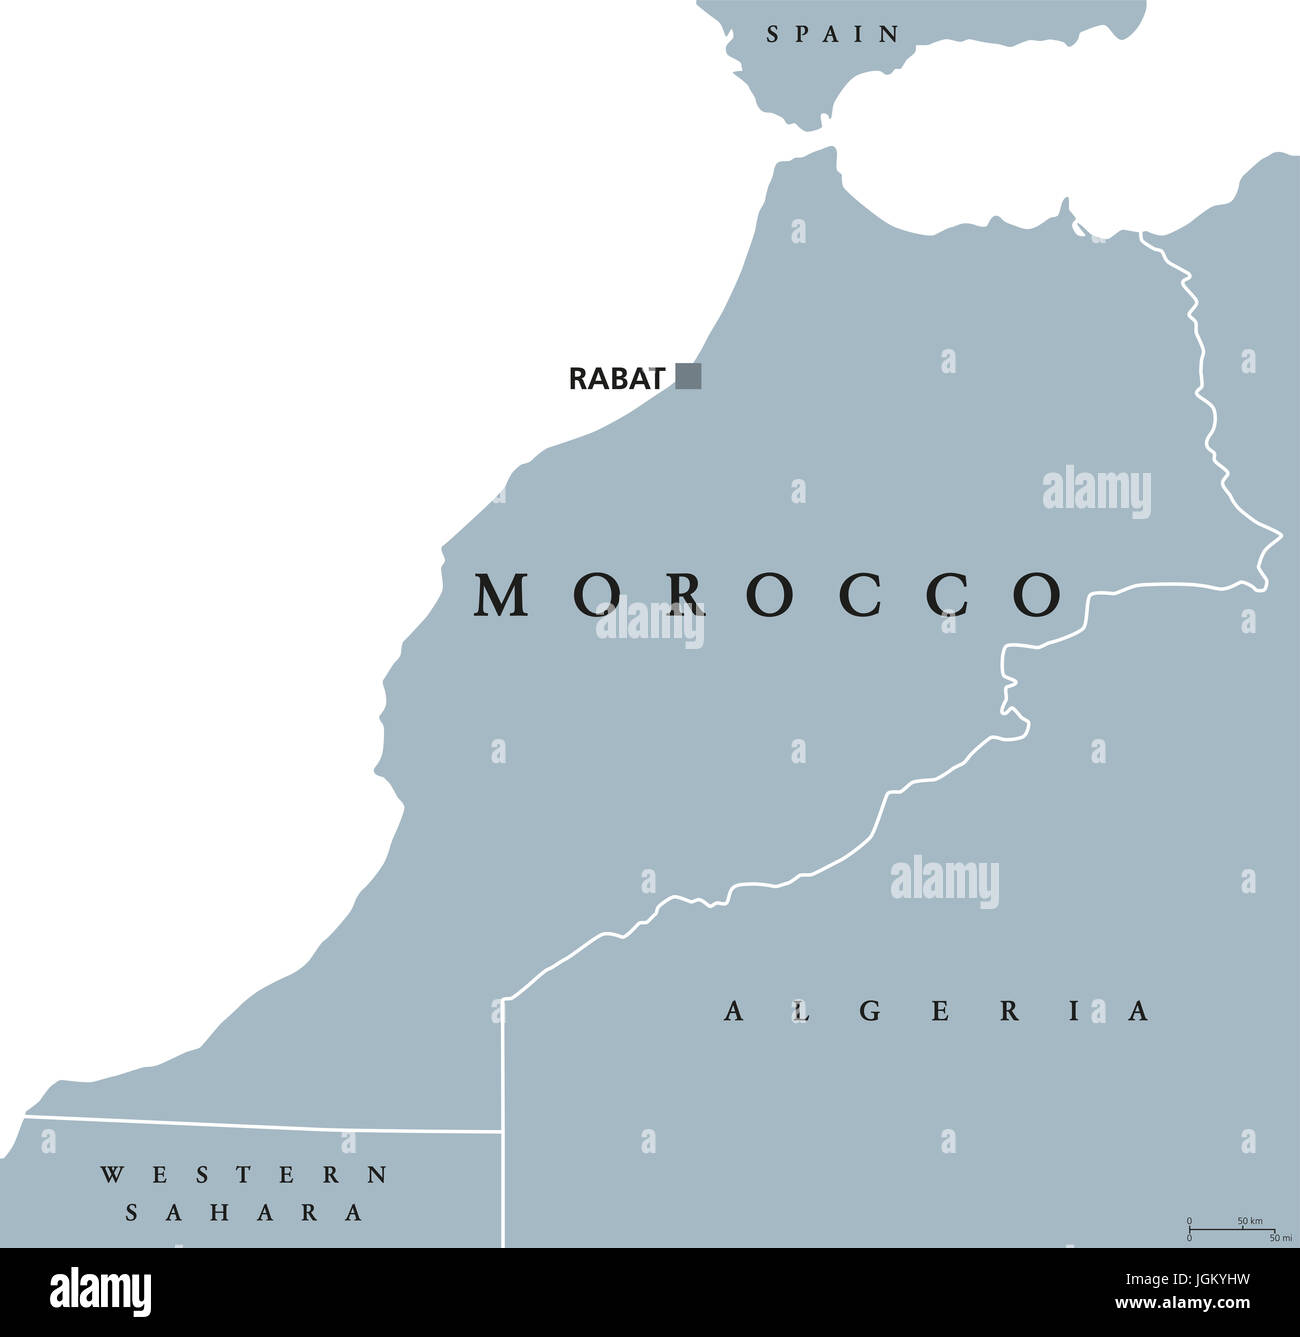 Marruecos mapa político con capital Rabat y fronteras. Reino y país árabe en la región del Magreb en el norte de África. Ilustración de color gris. Foto de stock